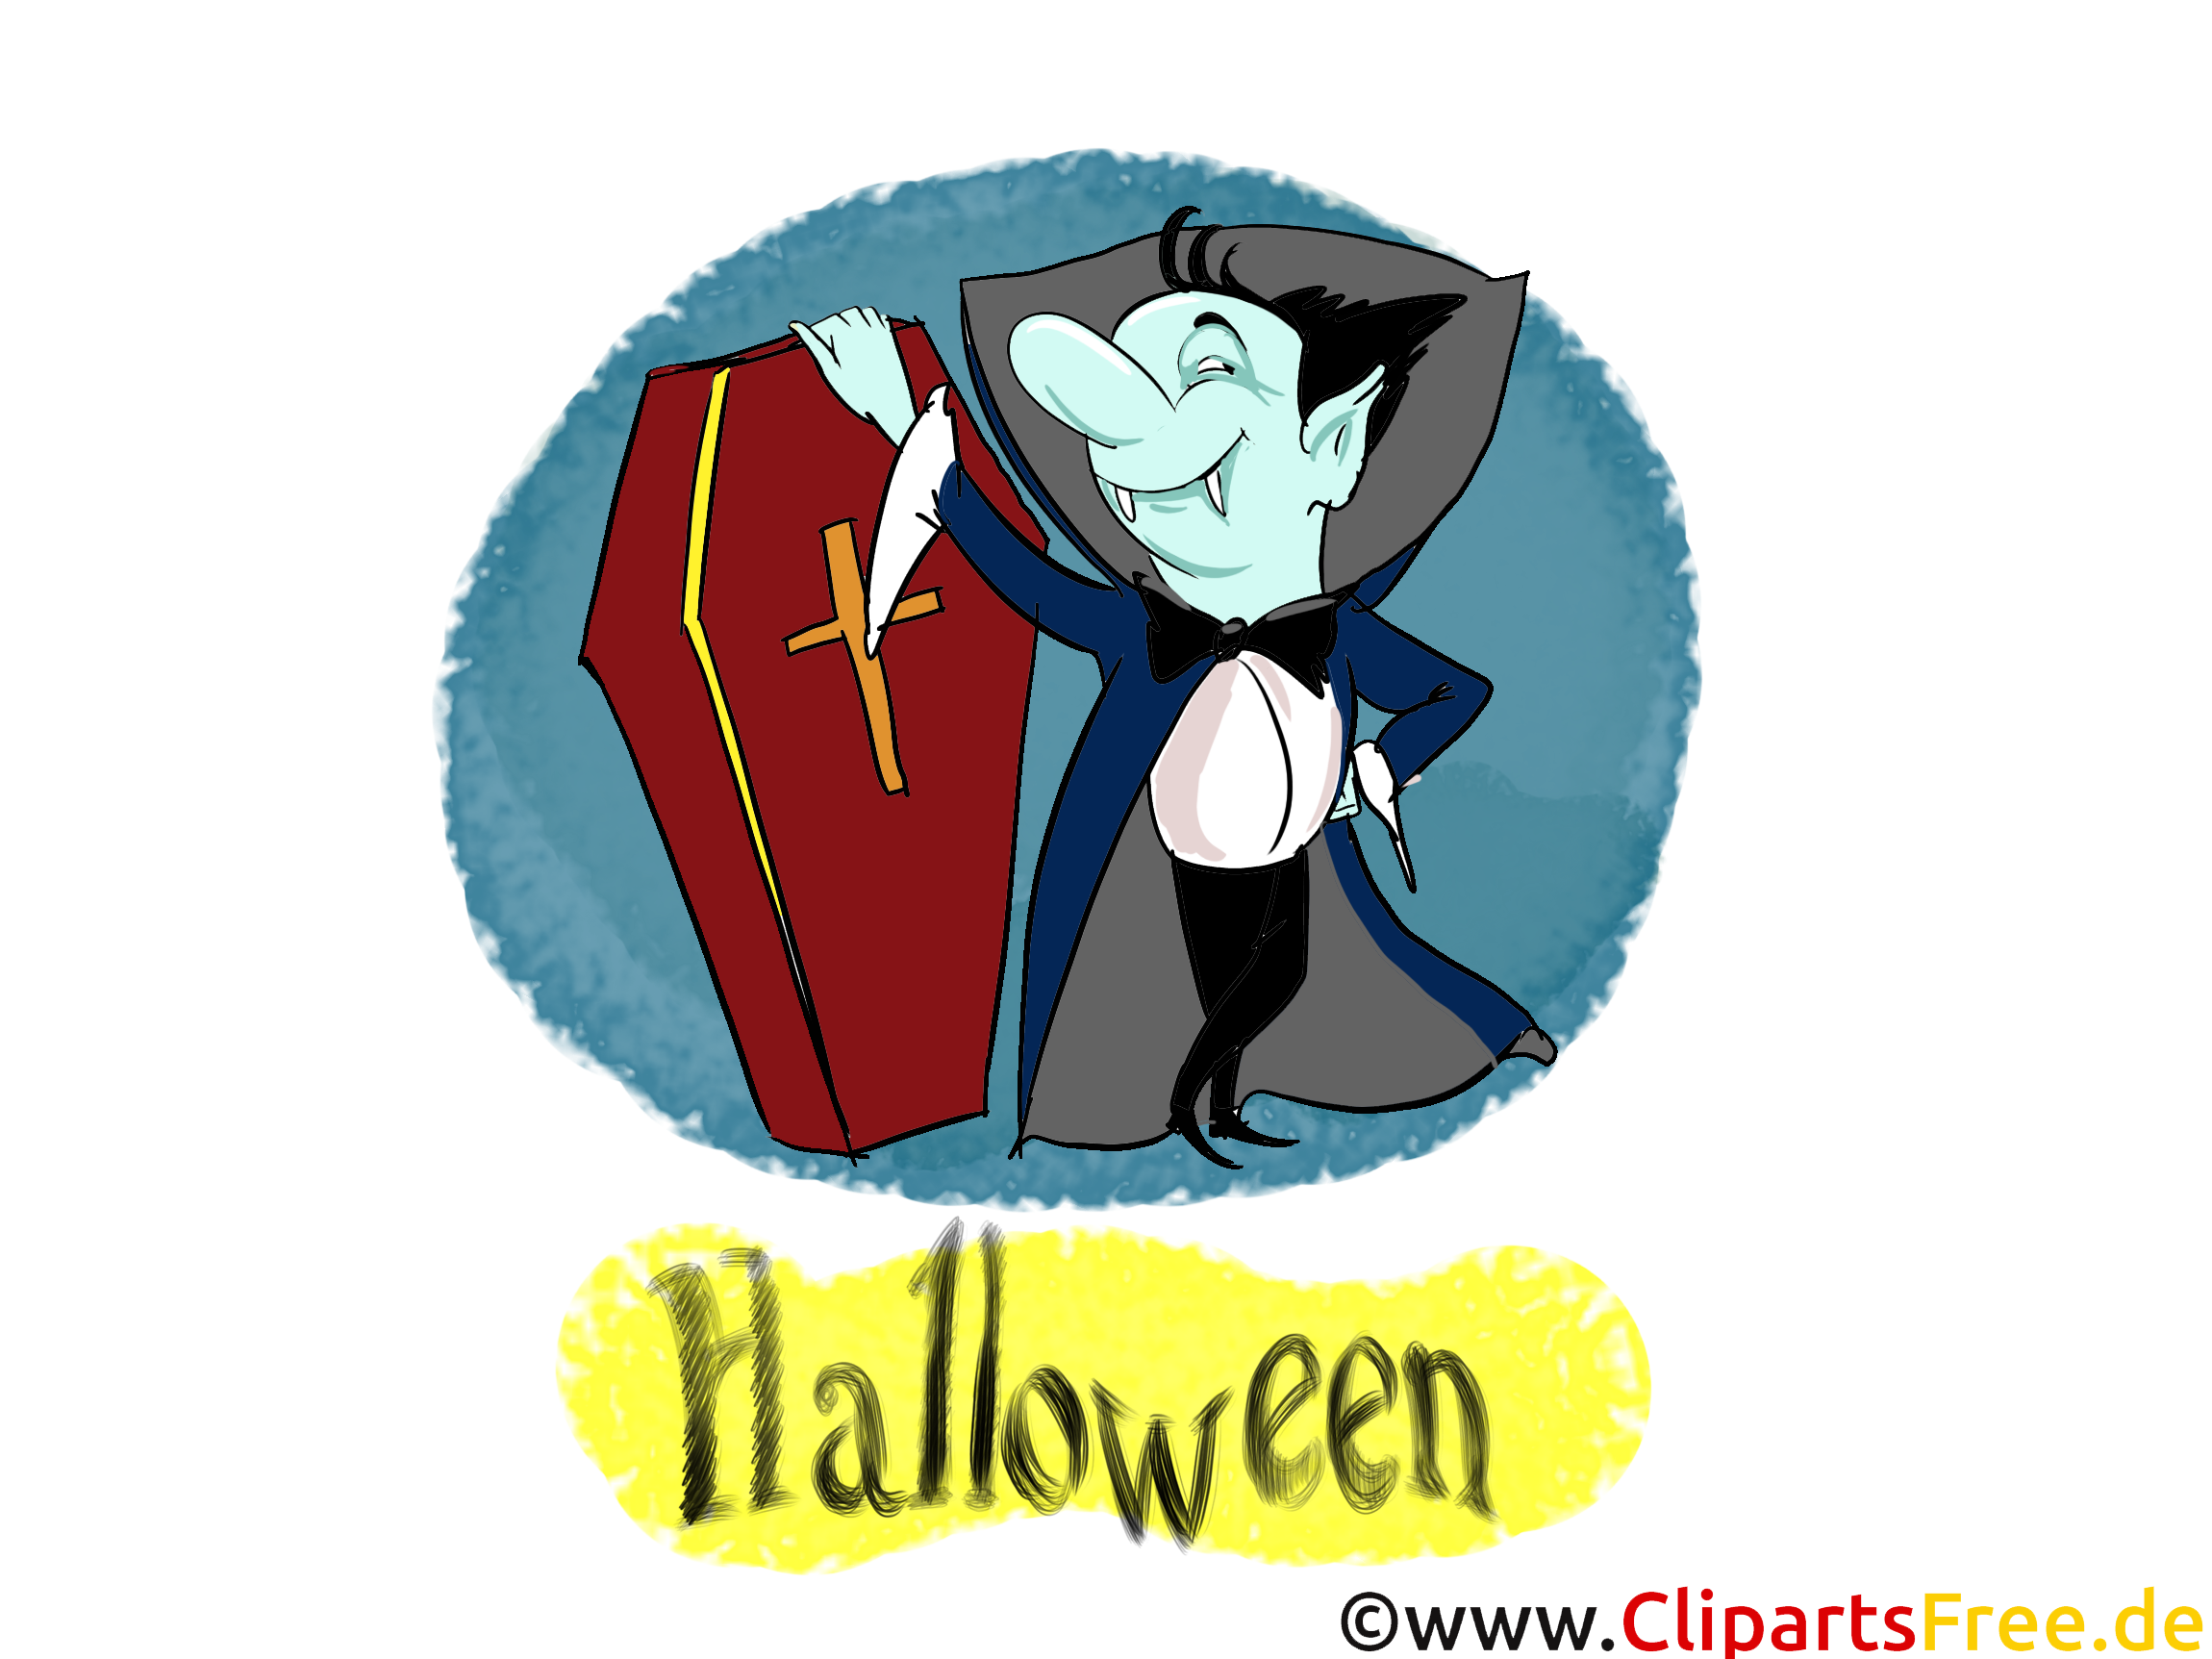 Dracula dessins gratuits - Halloween clipart